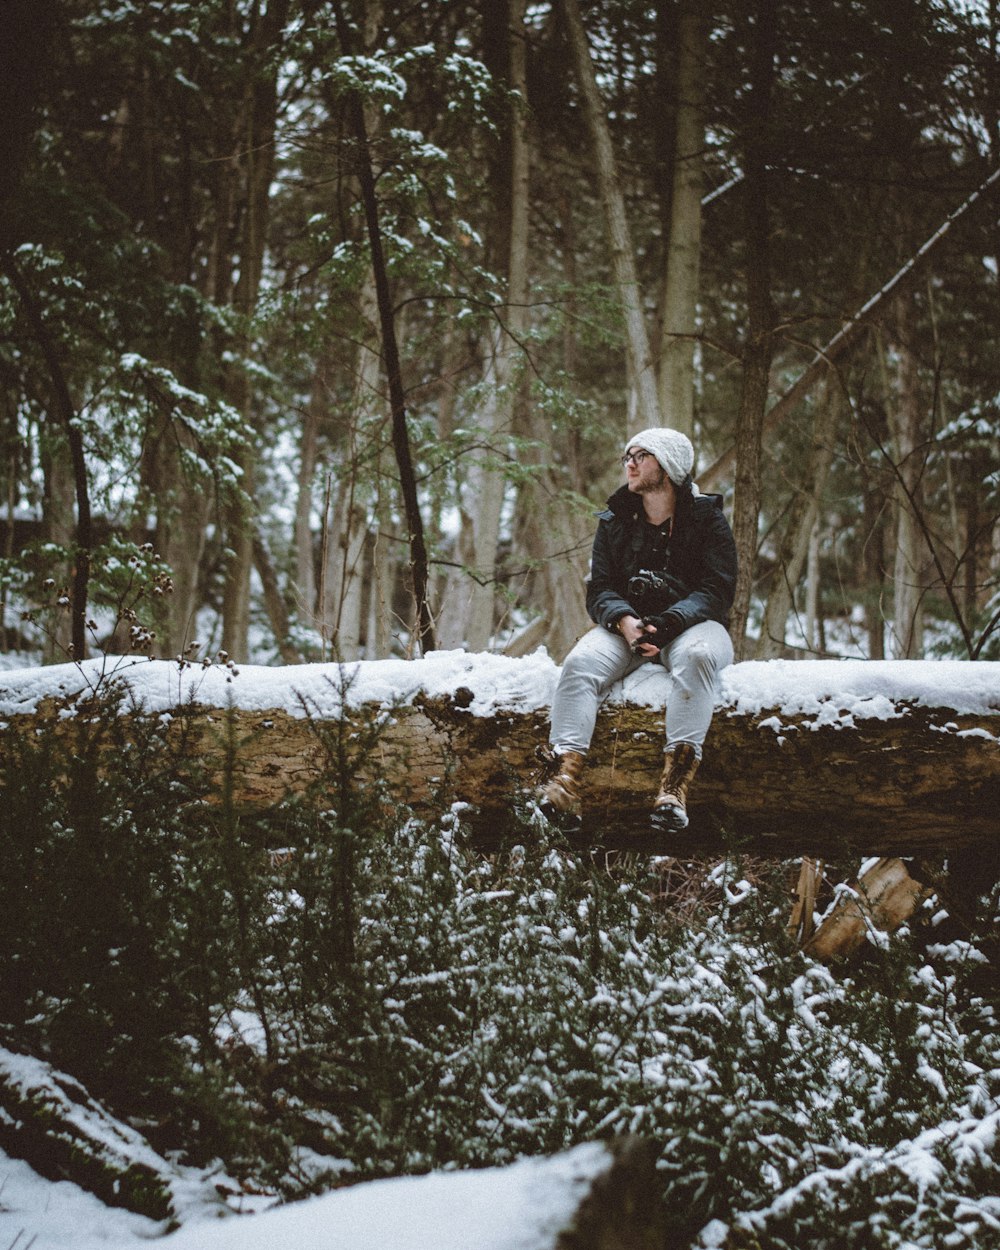 Mann mit weißer Strickmütze und schwarzer Jacke sitzt auf schneebedecktem Baumstamm